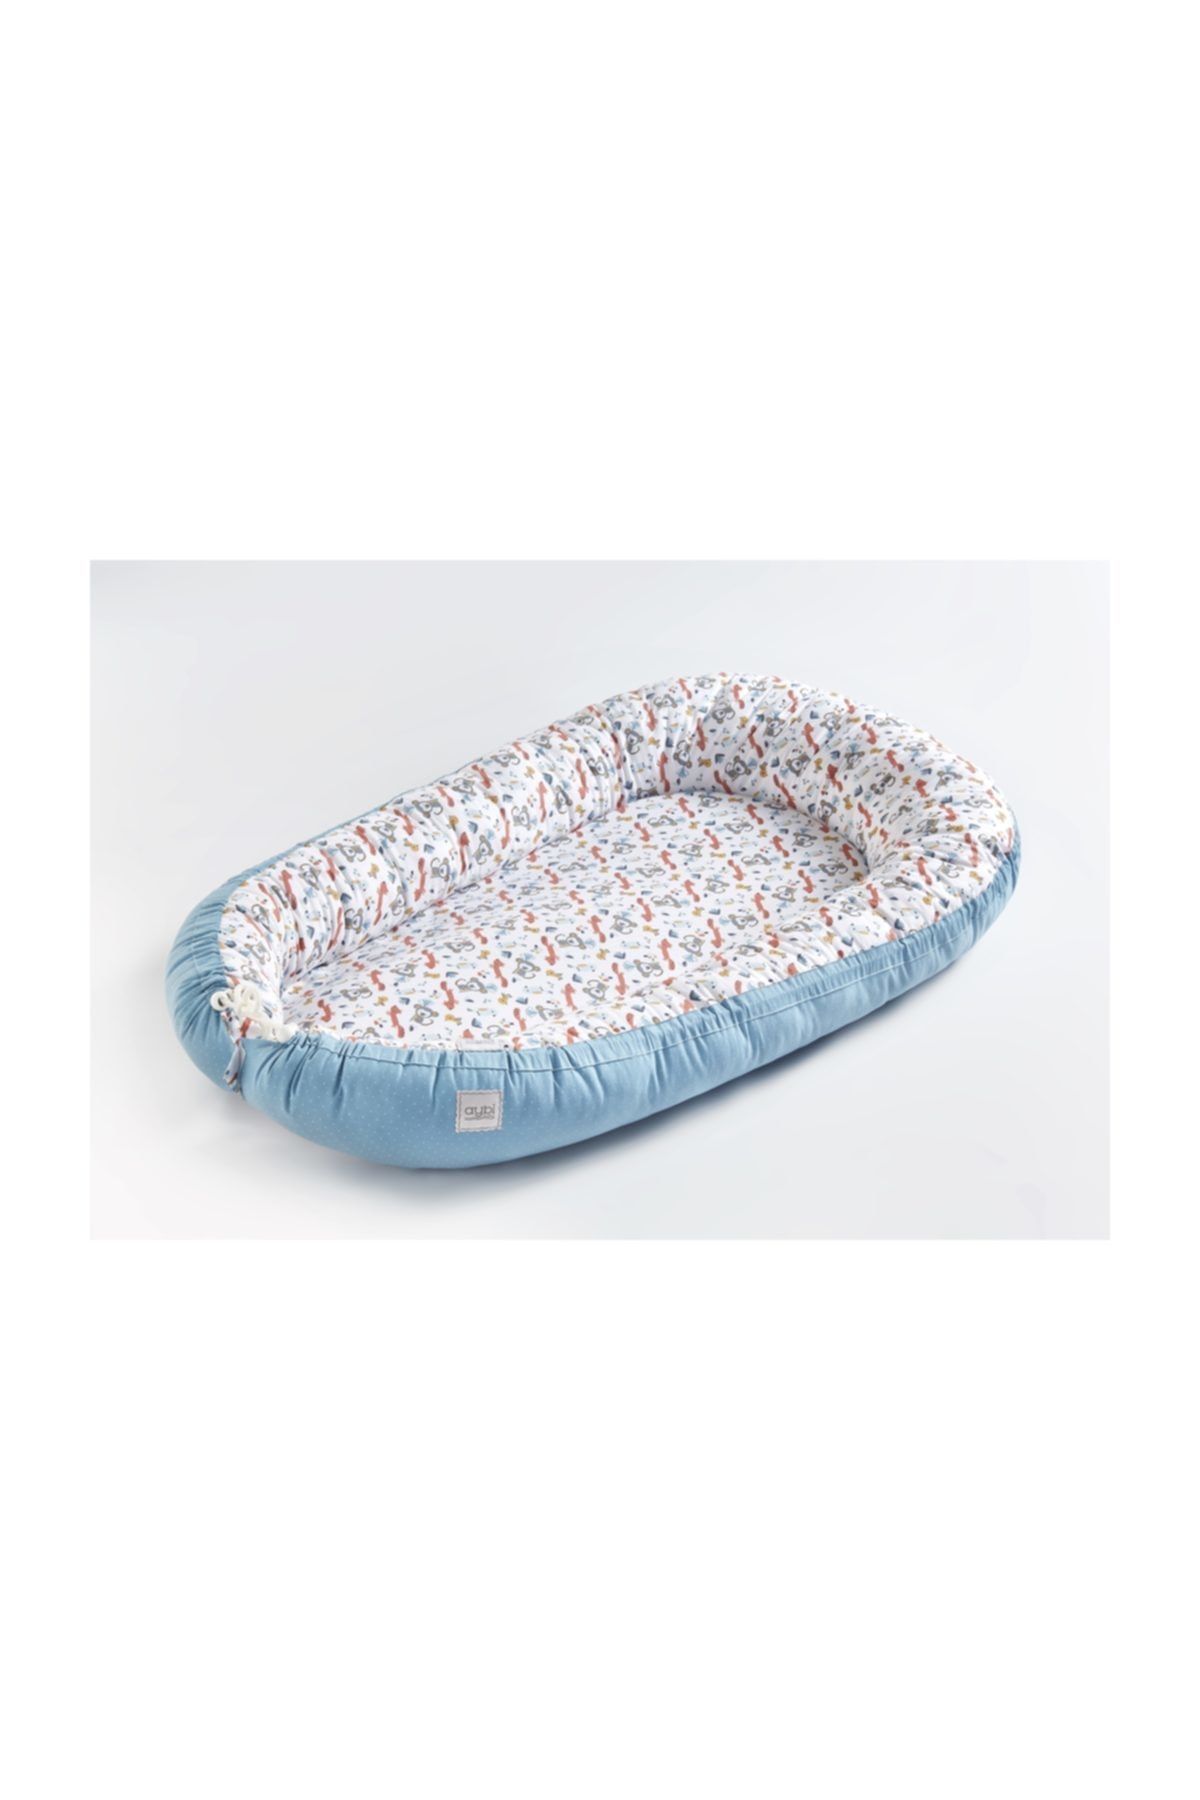 Aybi Baby Baby Nest - Kundak Bebek Yatağı